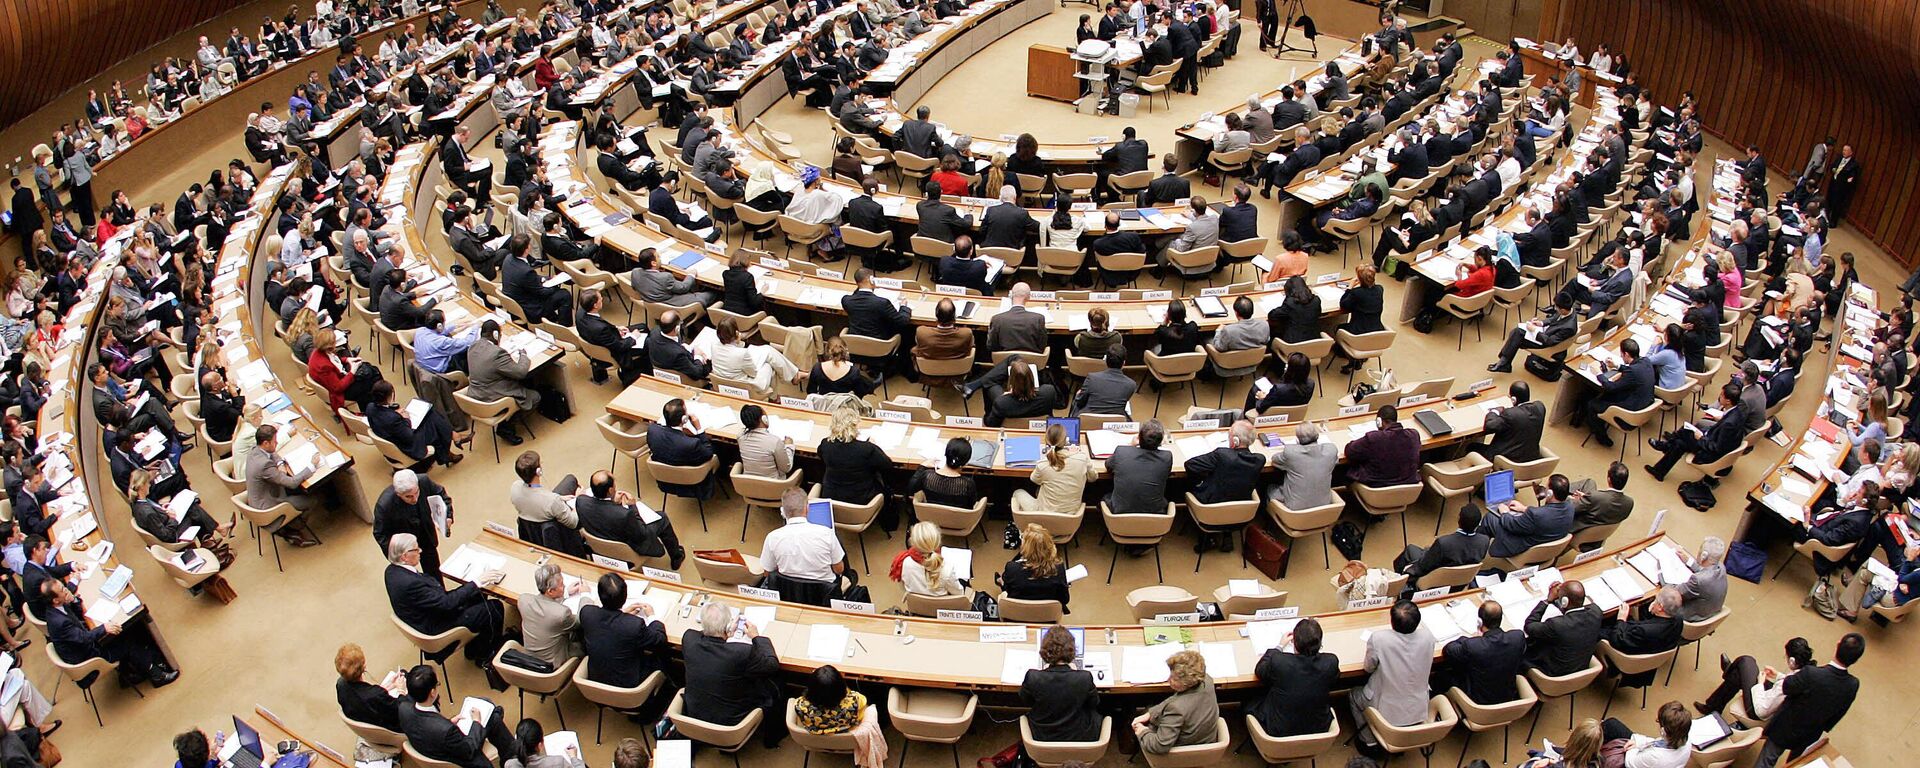 Зал заседаний, где проходит вторая сессия Совета по правам человека - Sputnik Абхазия, 1920, 07.04.2022